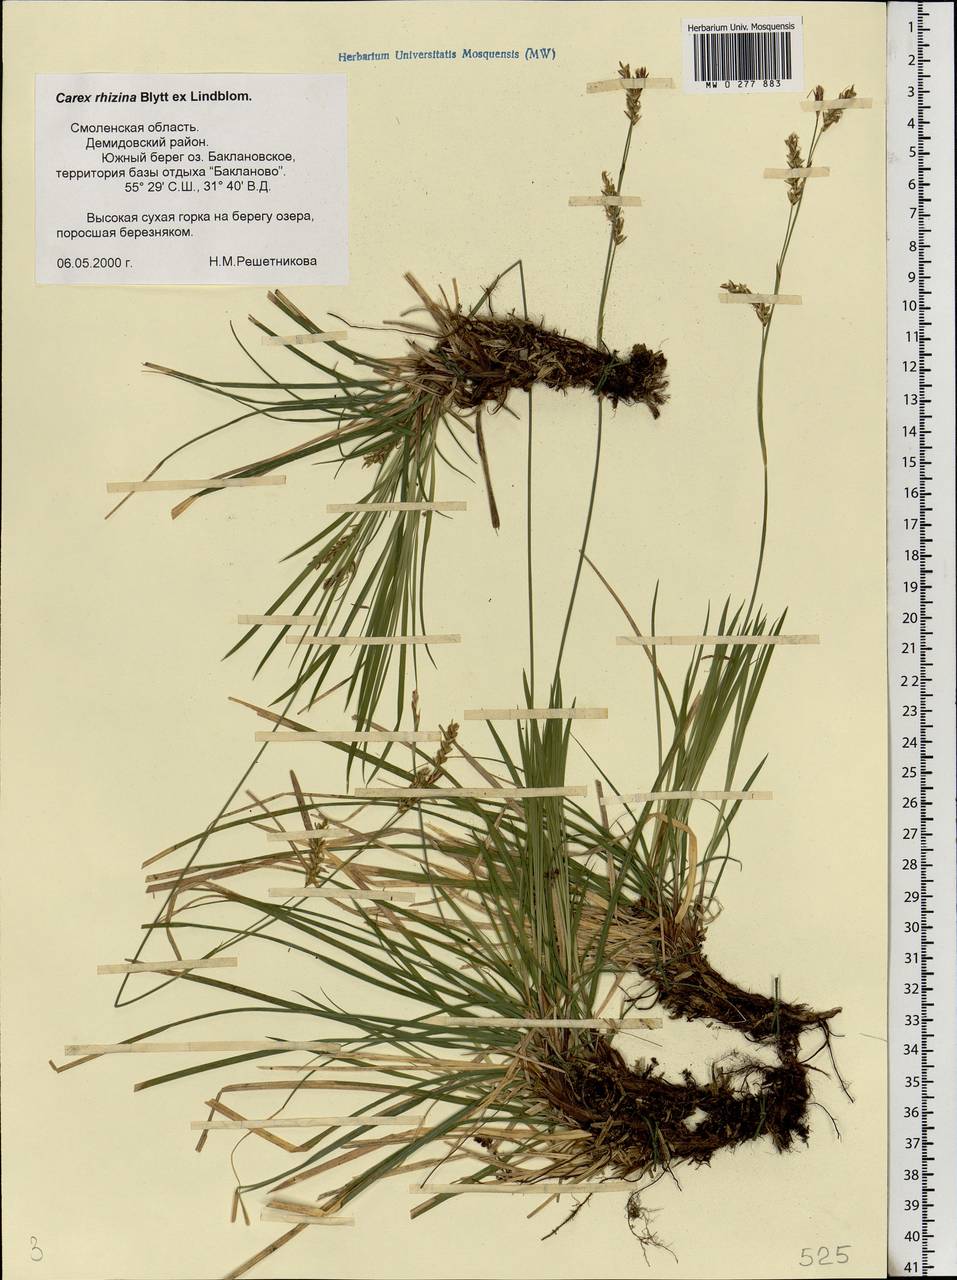 Carex rhizina Blytt ex Lindblom, Eastern Europe, Western region (E3) (Russia)